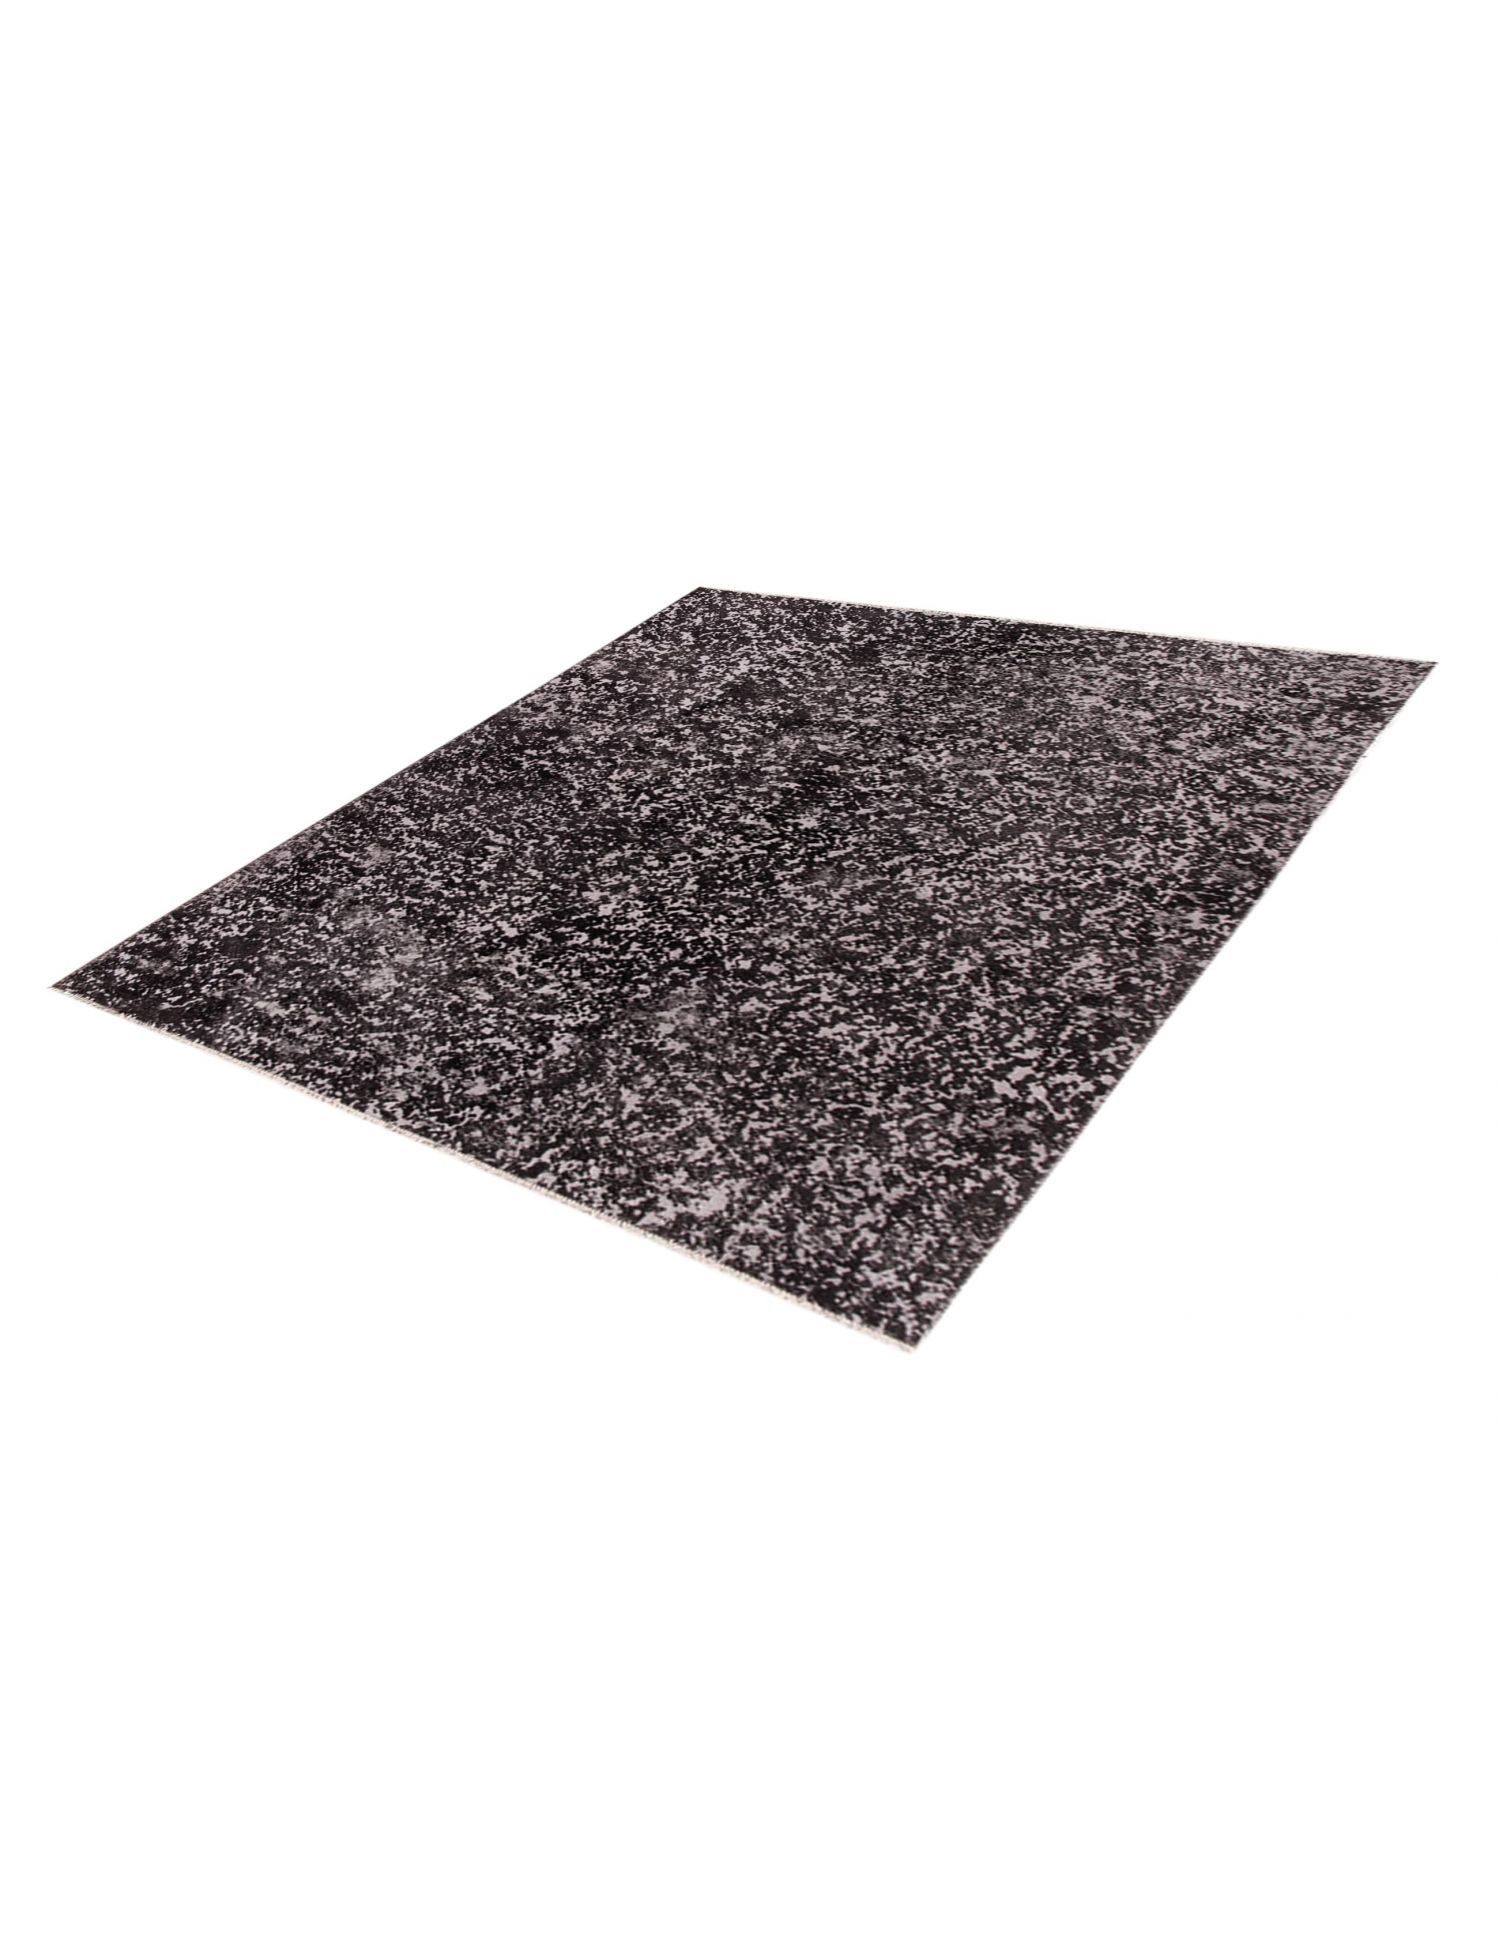 Persian Vintage Carpet  black <br/>206 x 168 cm